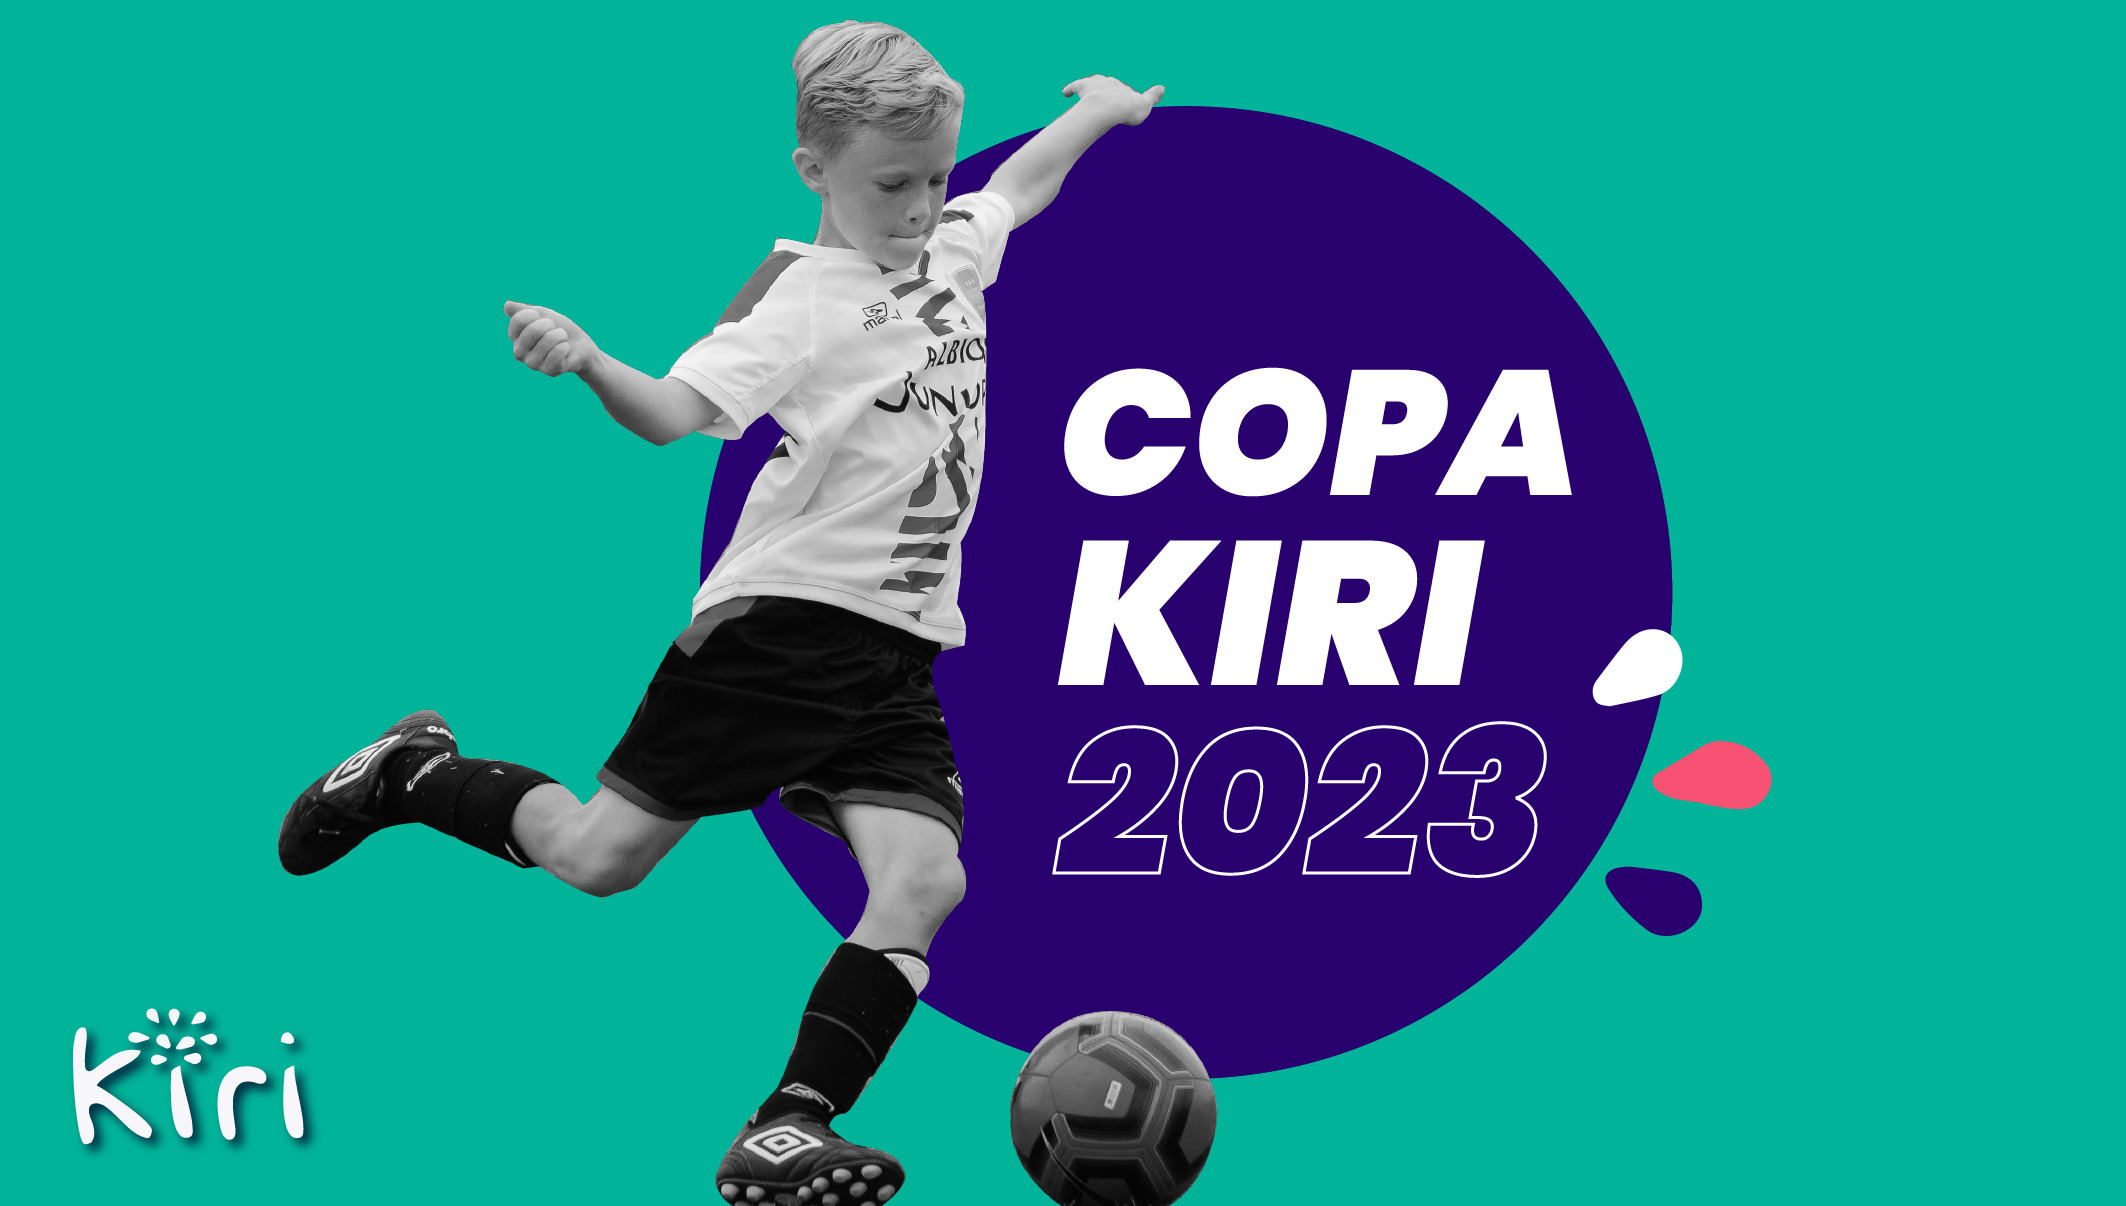 Featured image for “Copa Kiri 2023: Por más deporte y salud mental”